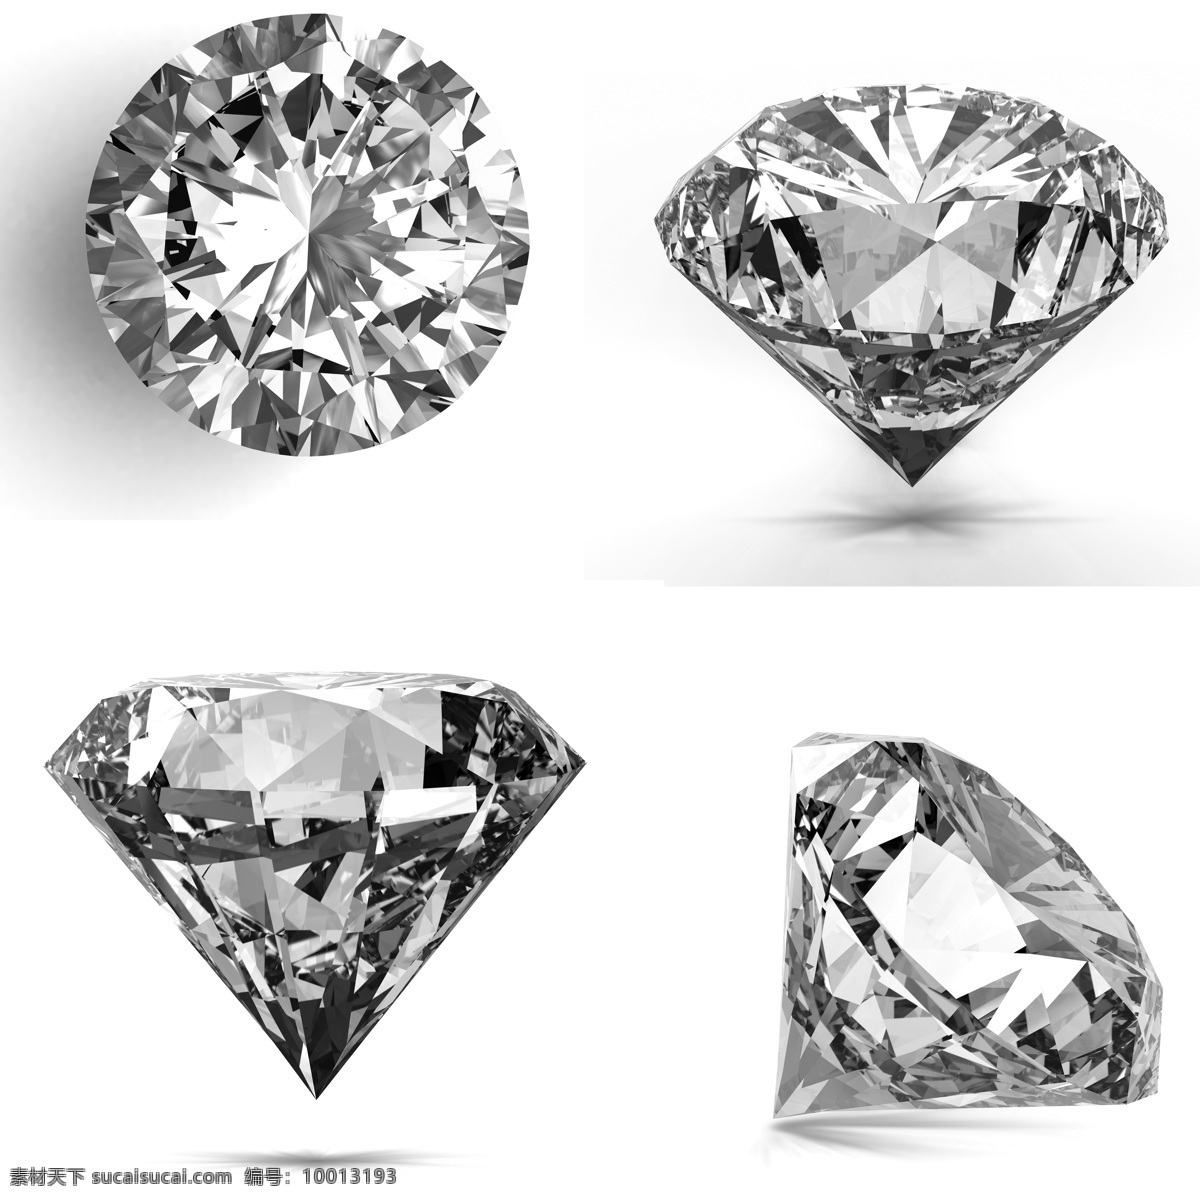 高清 精致 钻石 闪耀 珠宝 晶体 剔透